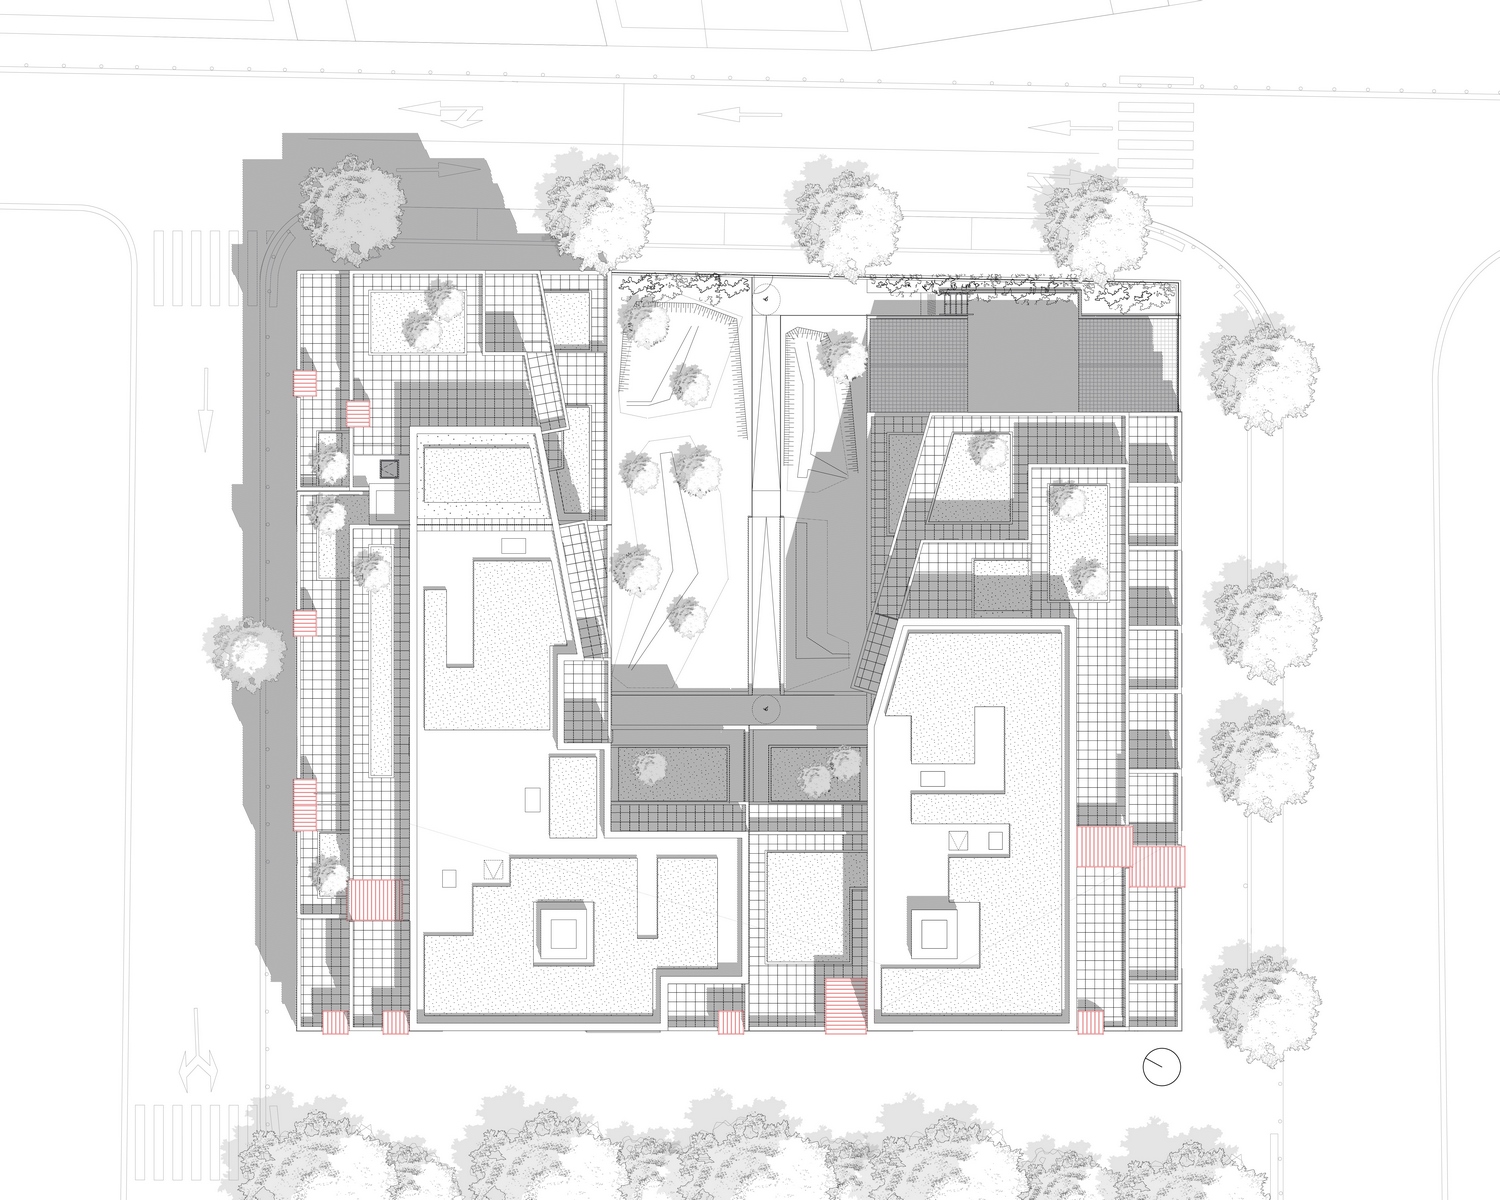 patey architectes - construction de 61 logements “les ateliers 130” dans la nouvelle zac vetrotex à chambéry - savoie